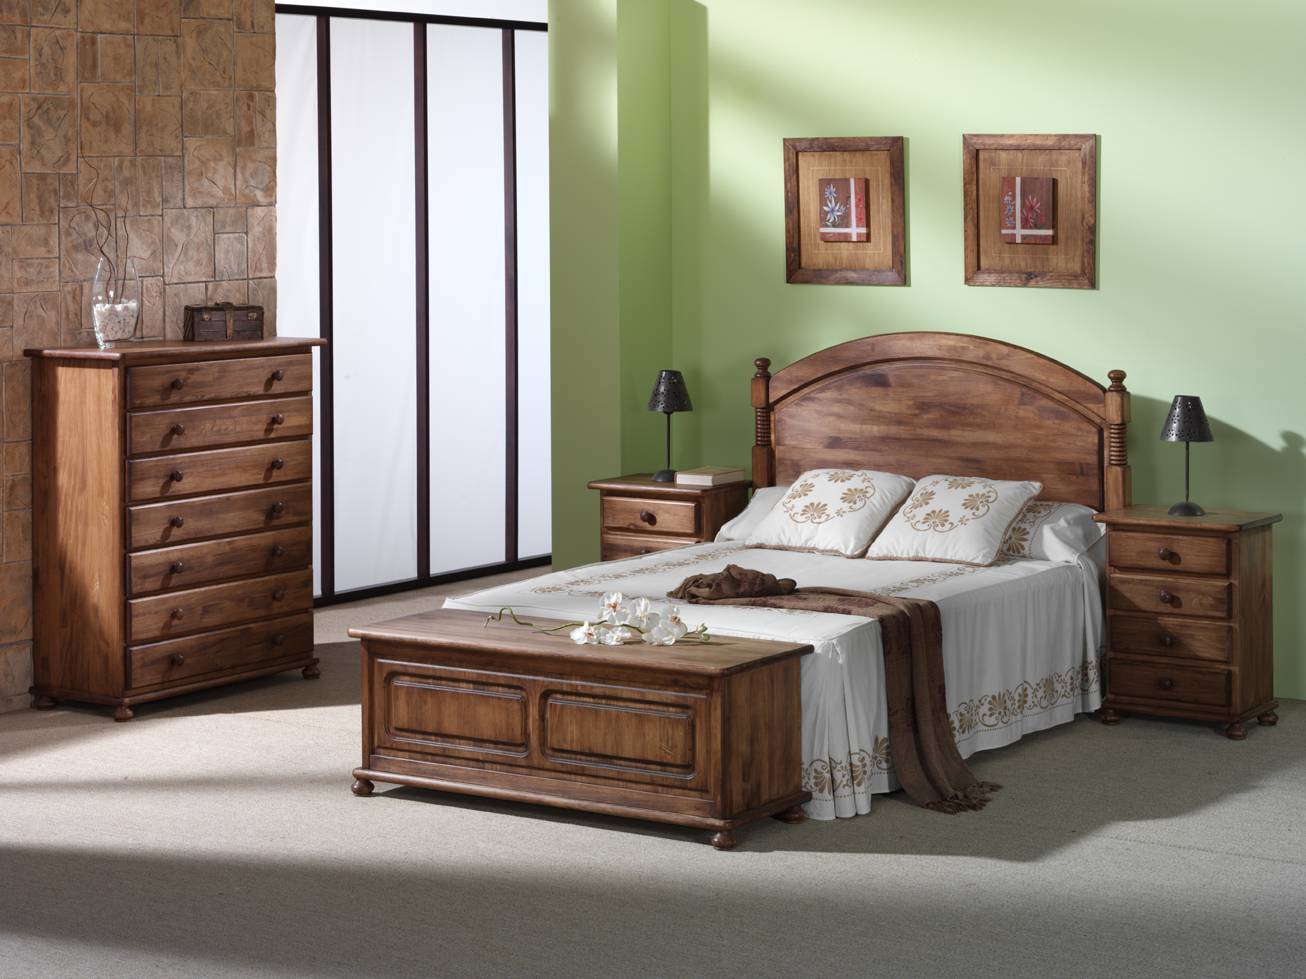 Xinfonier Pino 100 cm. - Sifonier de 7 cajones para dormitorio de matrimonio, de madera de pino maciza, pintado en una amplia gama de colores.